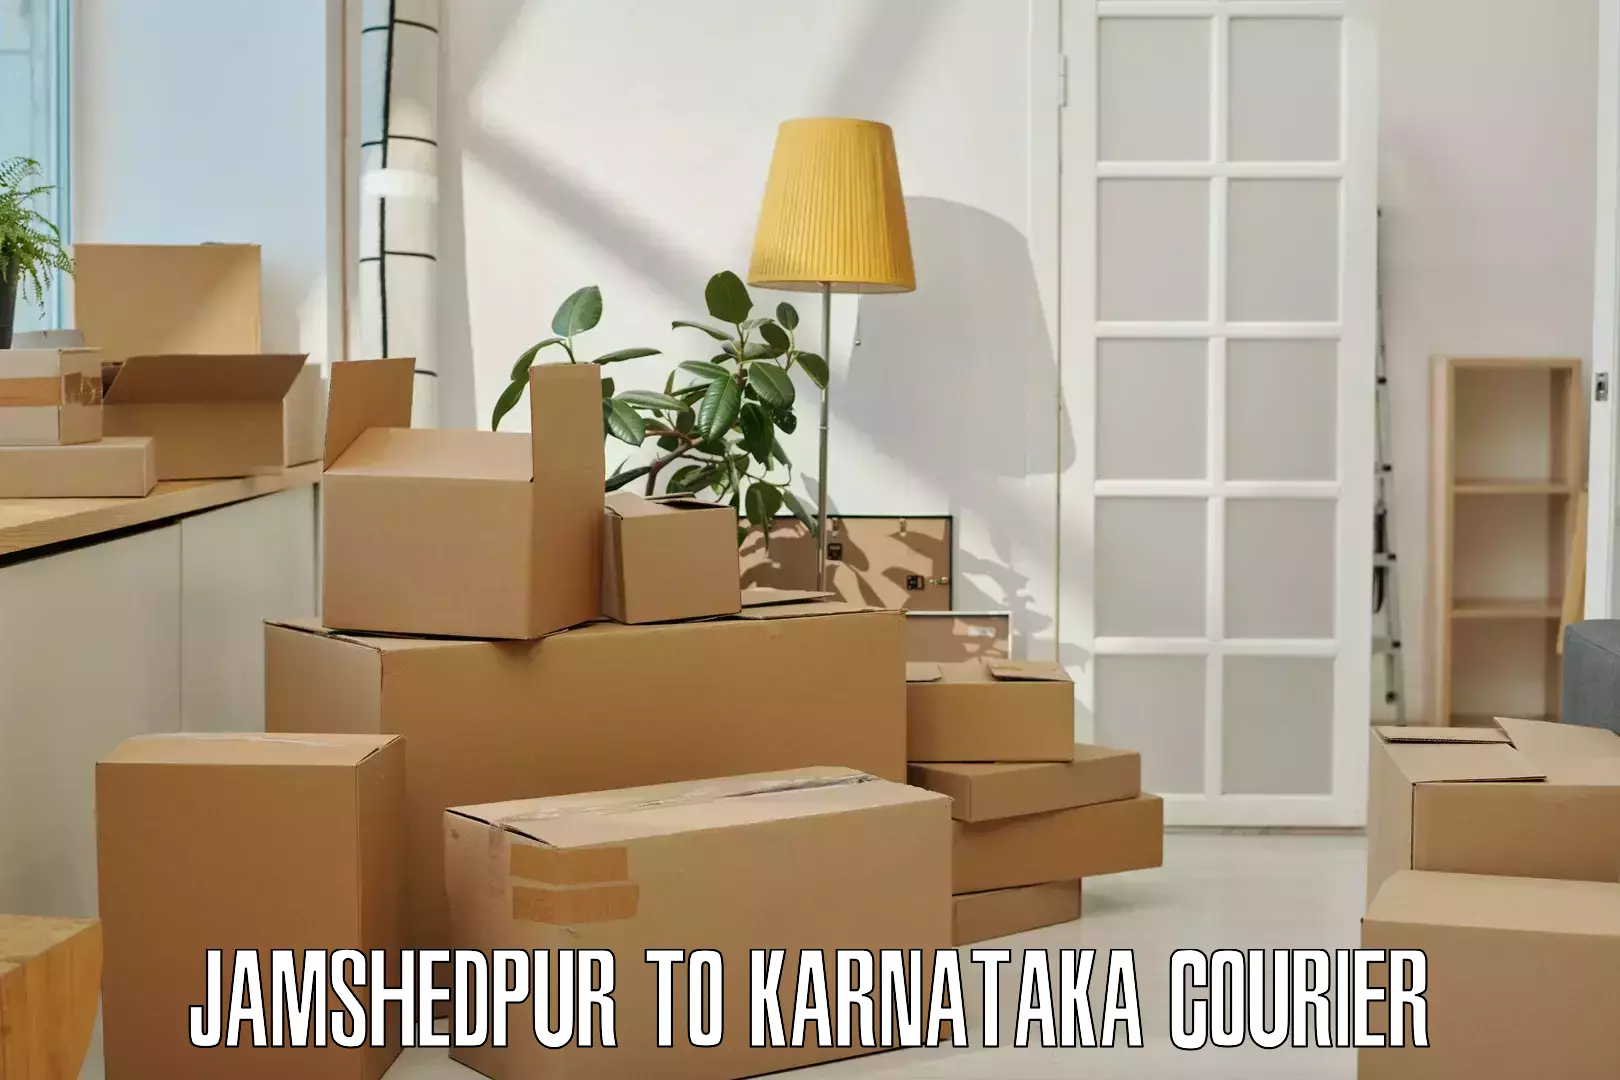 International parcel service Jamshedpur to Davangere